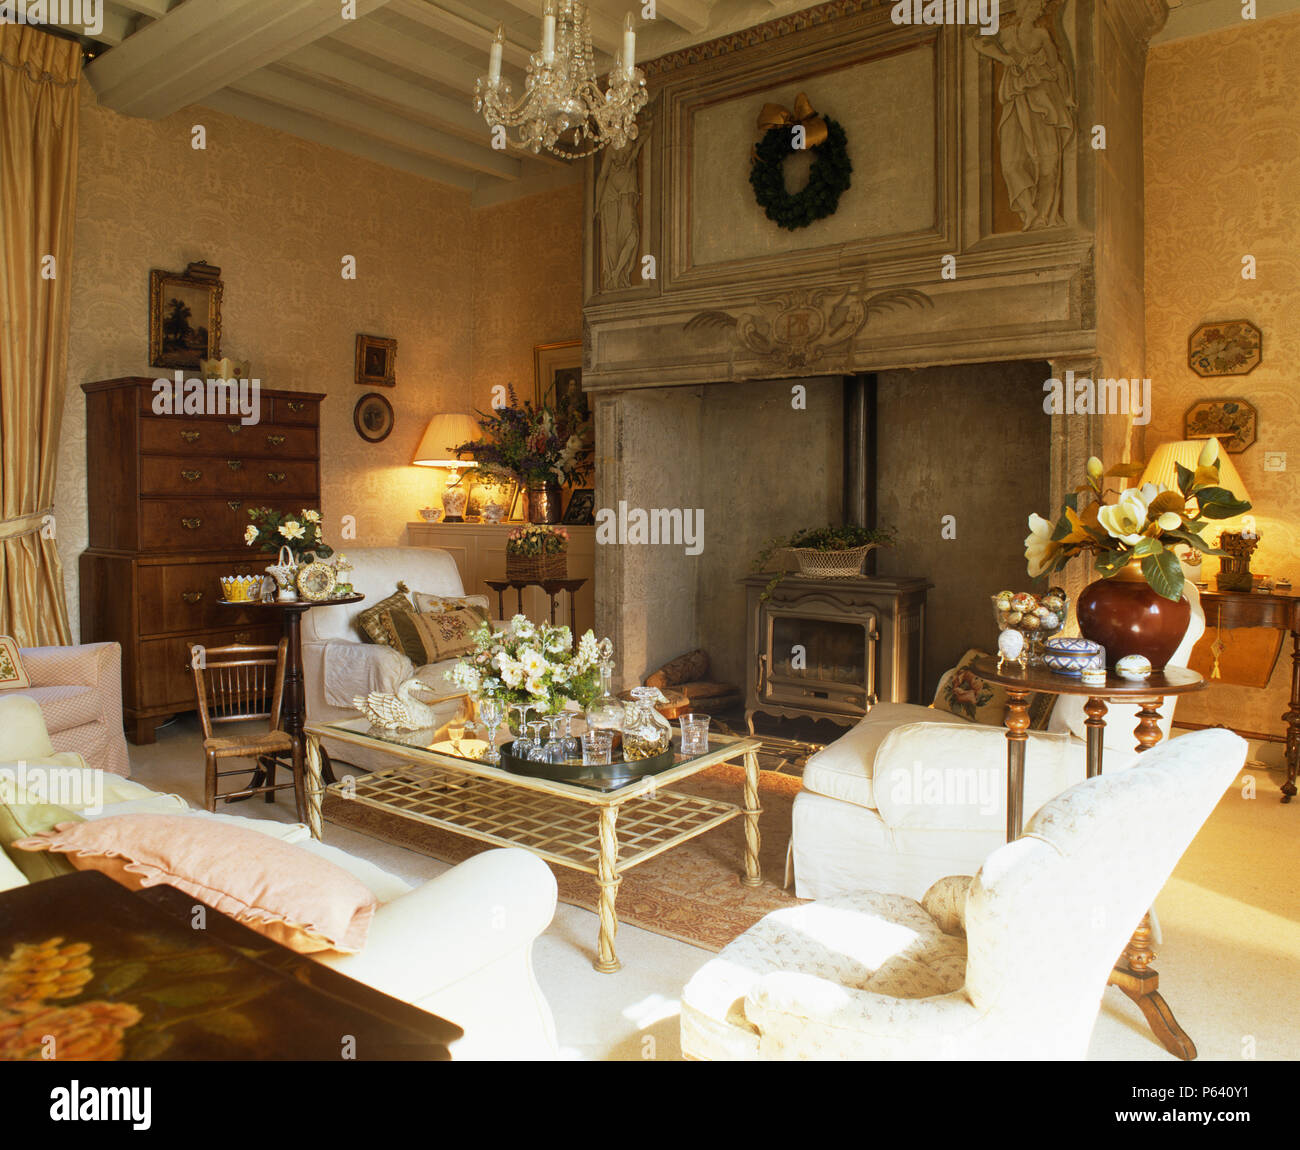 Ornati in legno intagliato con caminetto a legna nel paese francese salotto con divani bianchi e mobili antichi Foto Stock